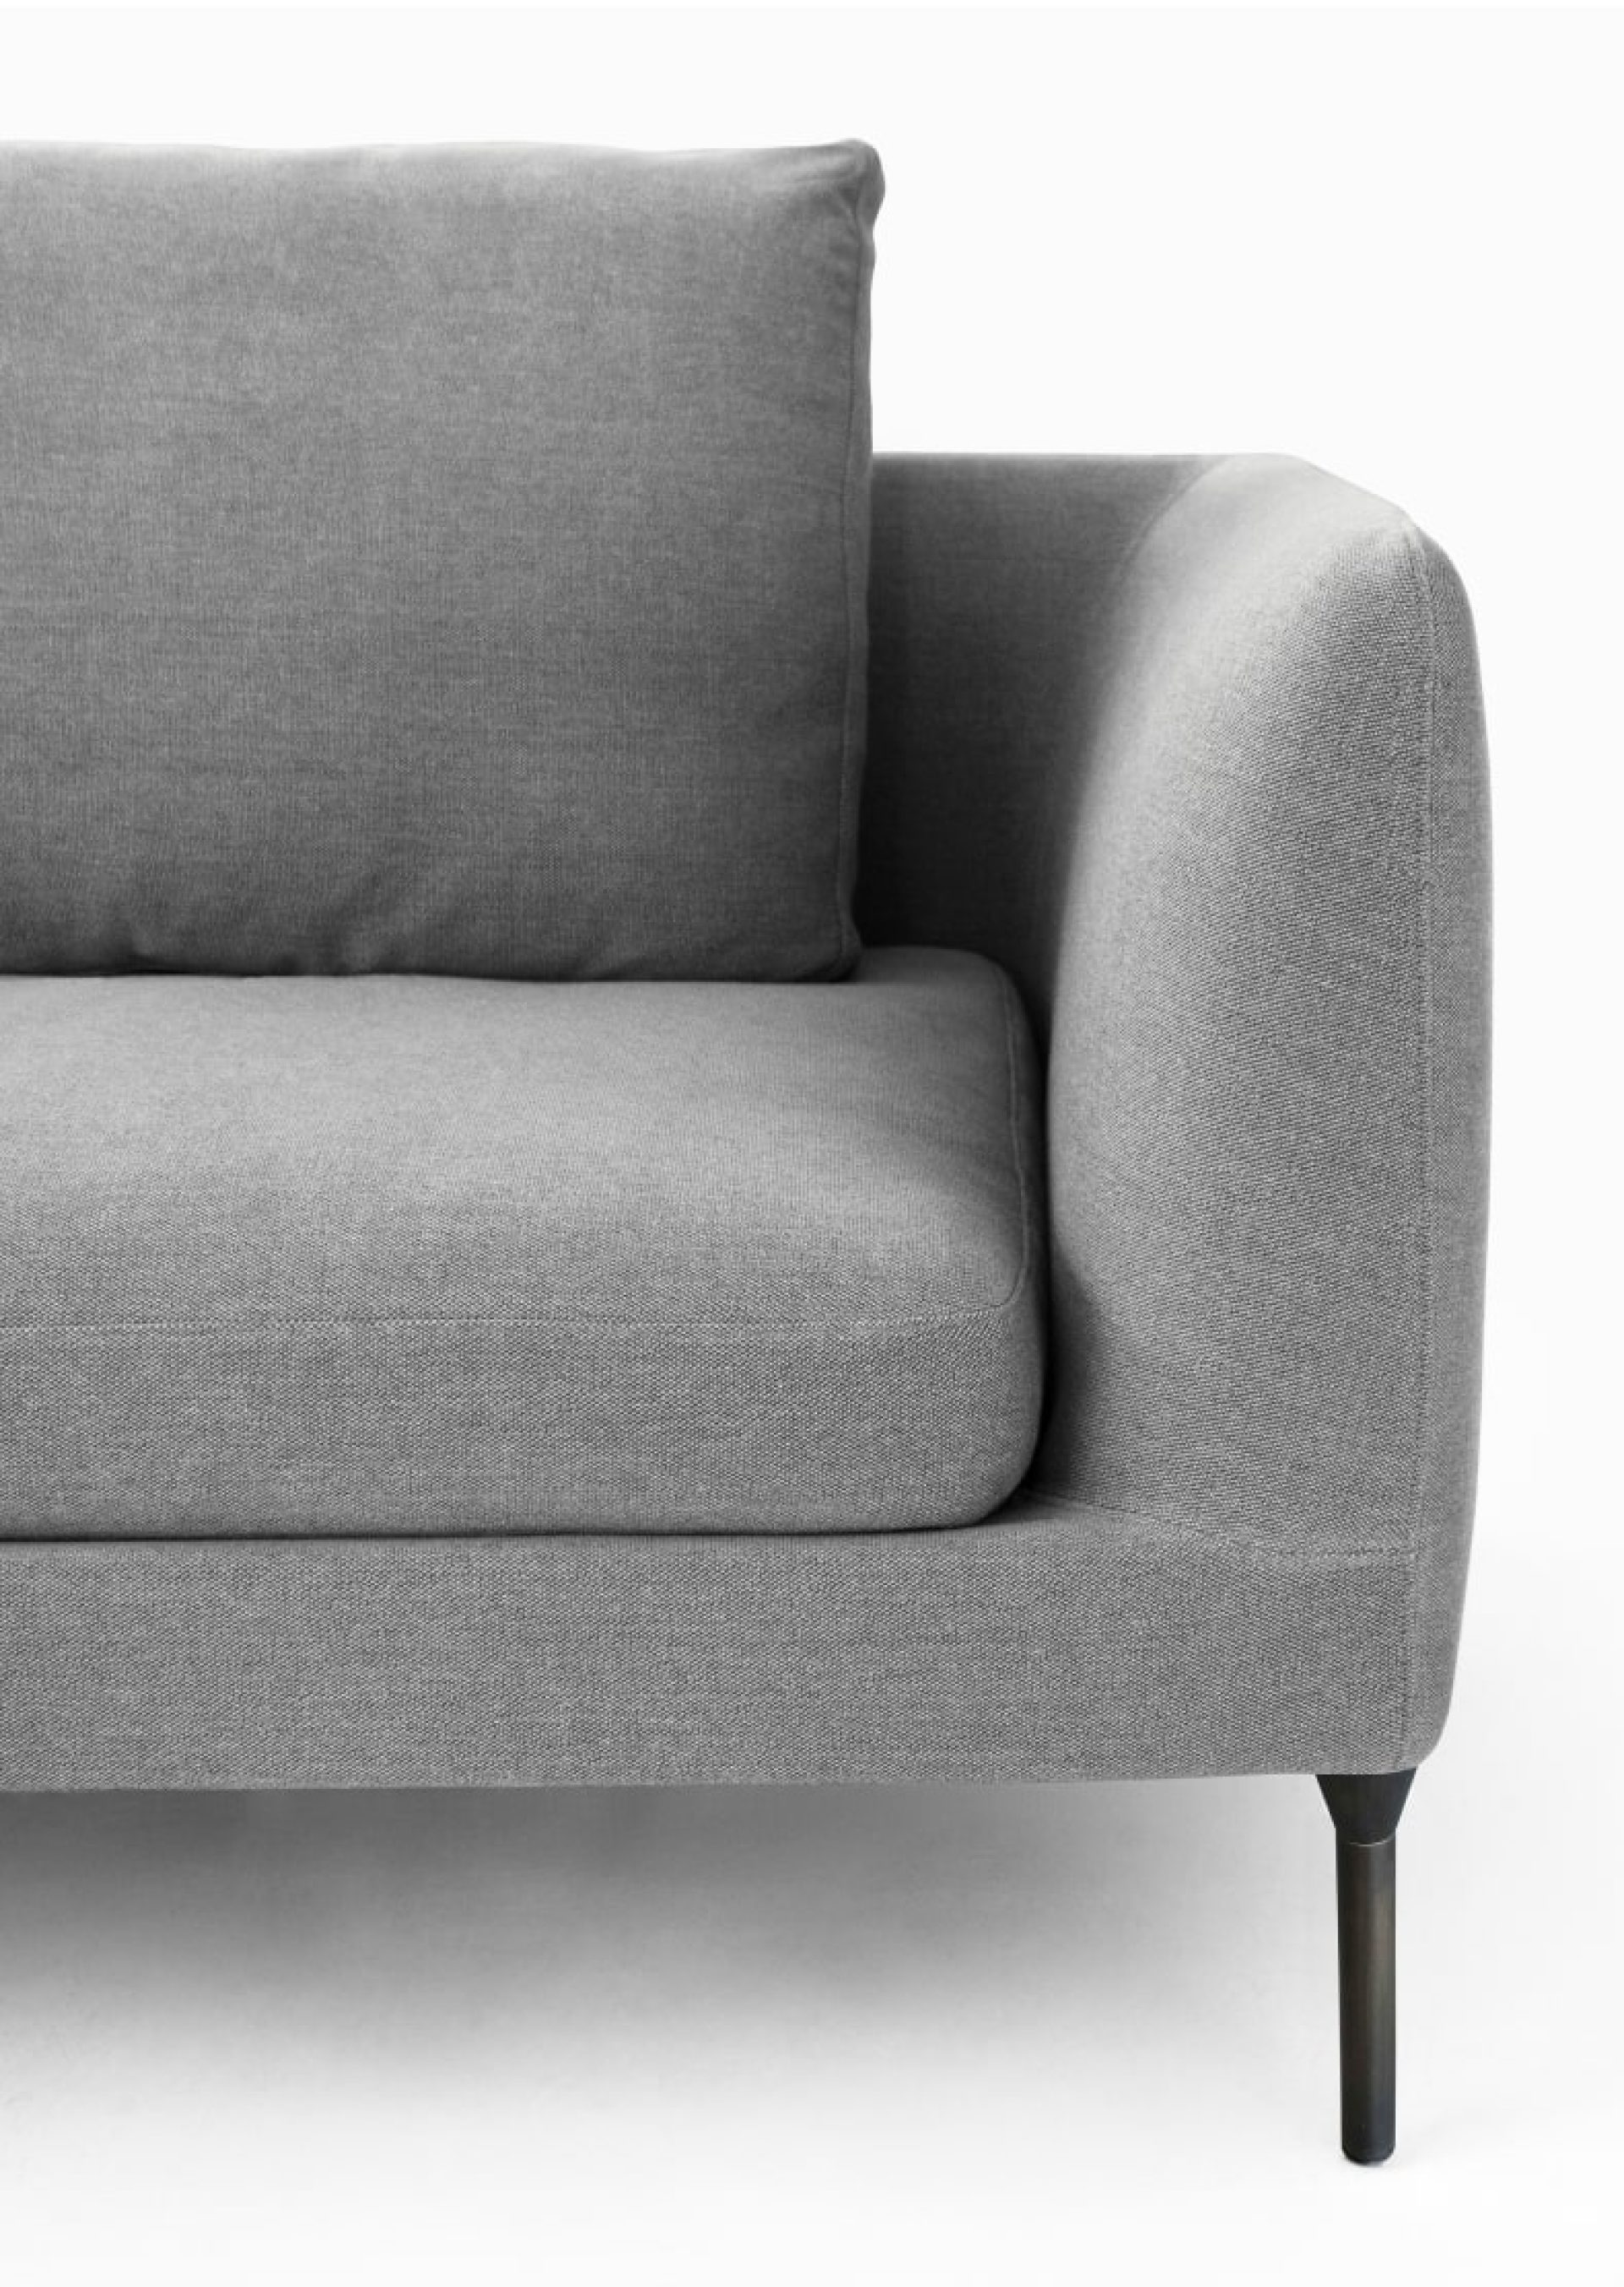 Sofá de tejido gris de alta calidad con diseño minimalista y atemporal de la marca italiana Bensen